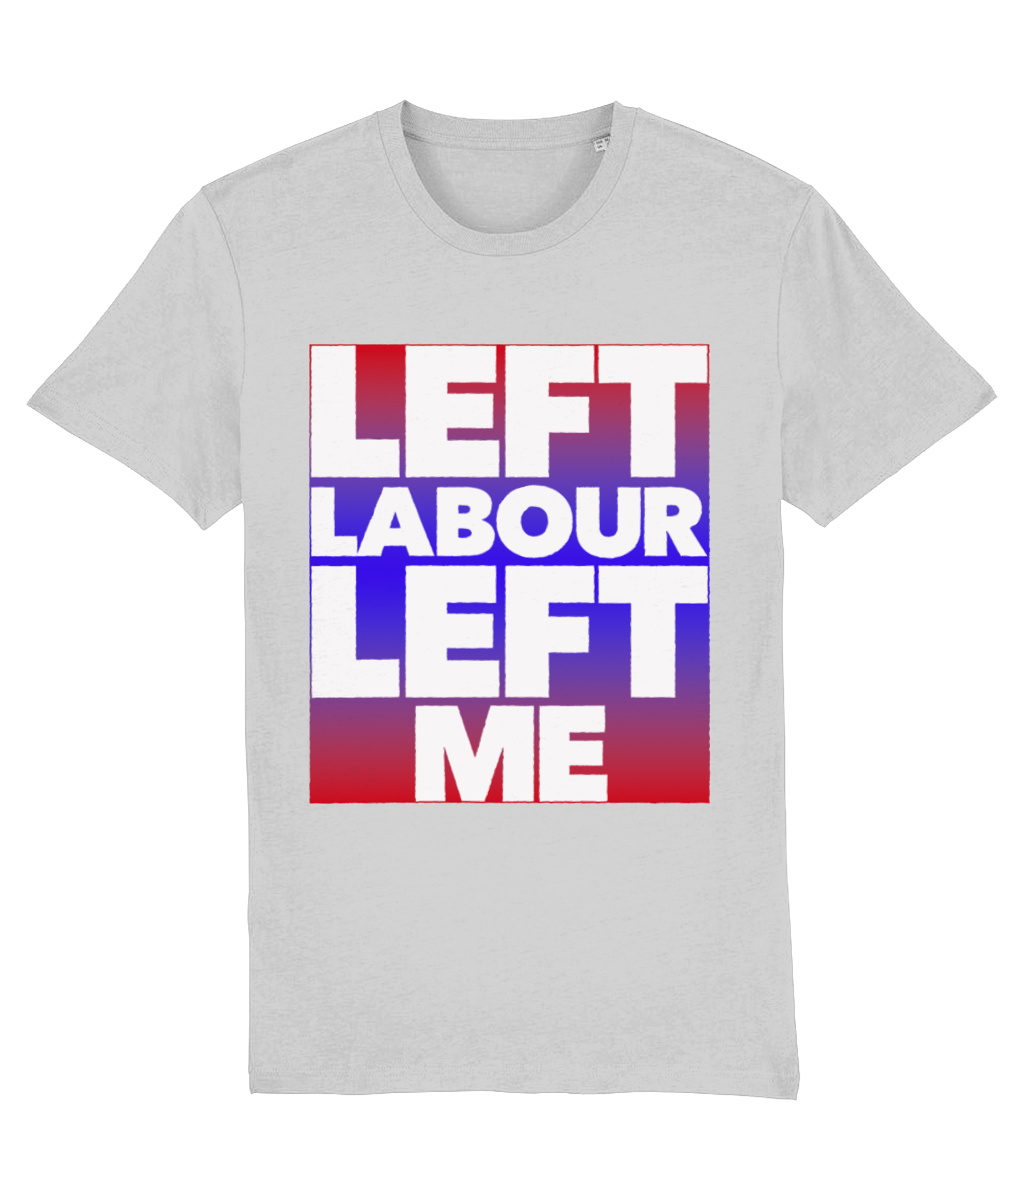 Left Labour Left Me - organic T-shirt